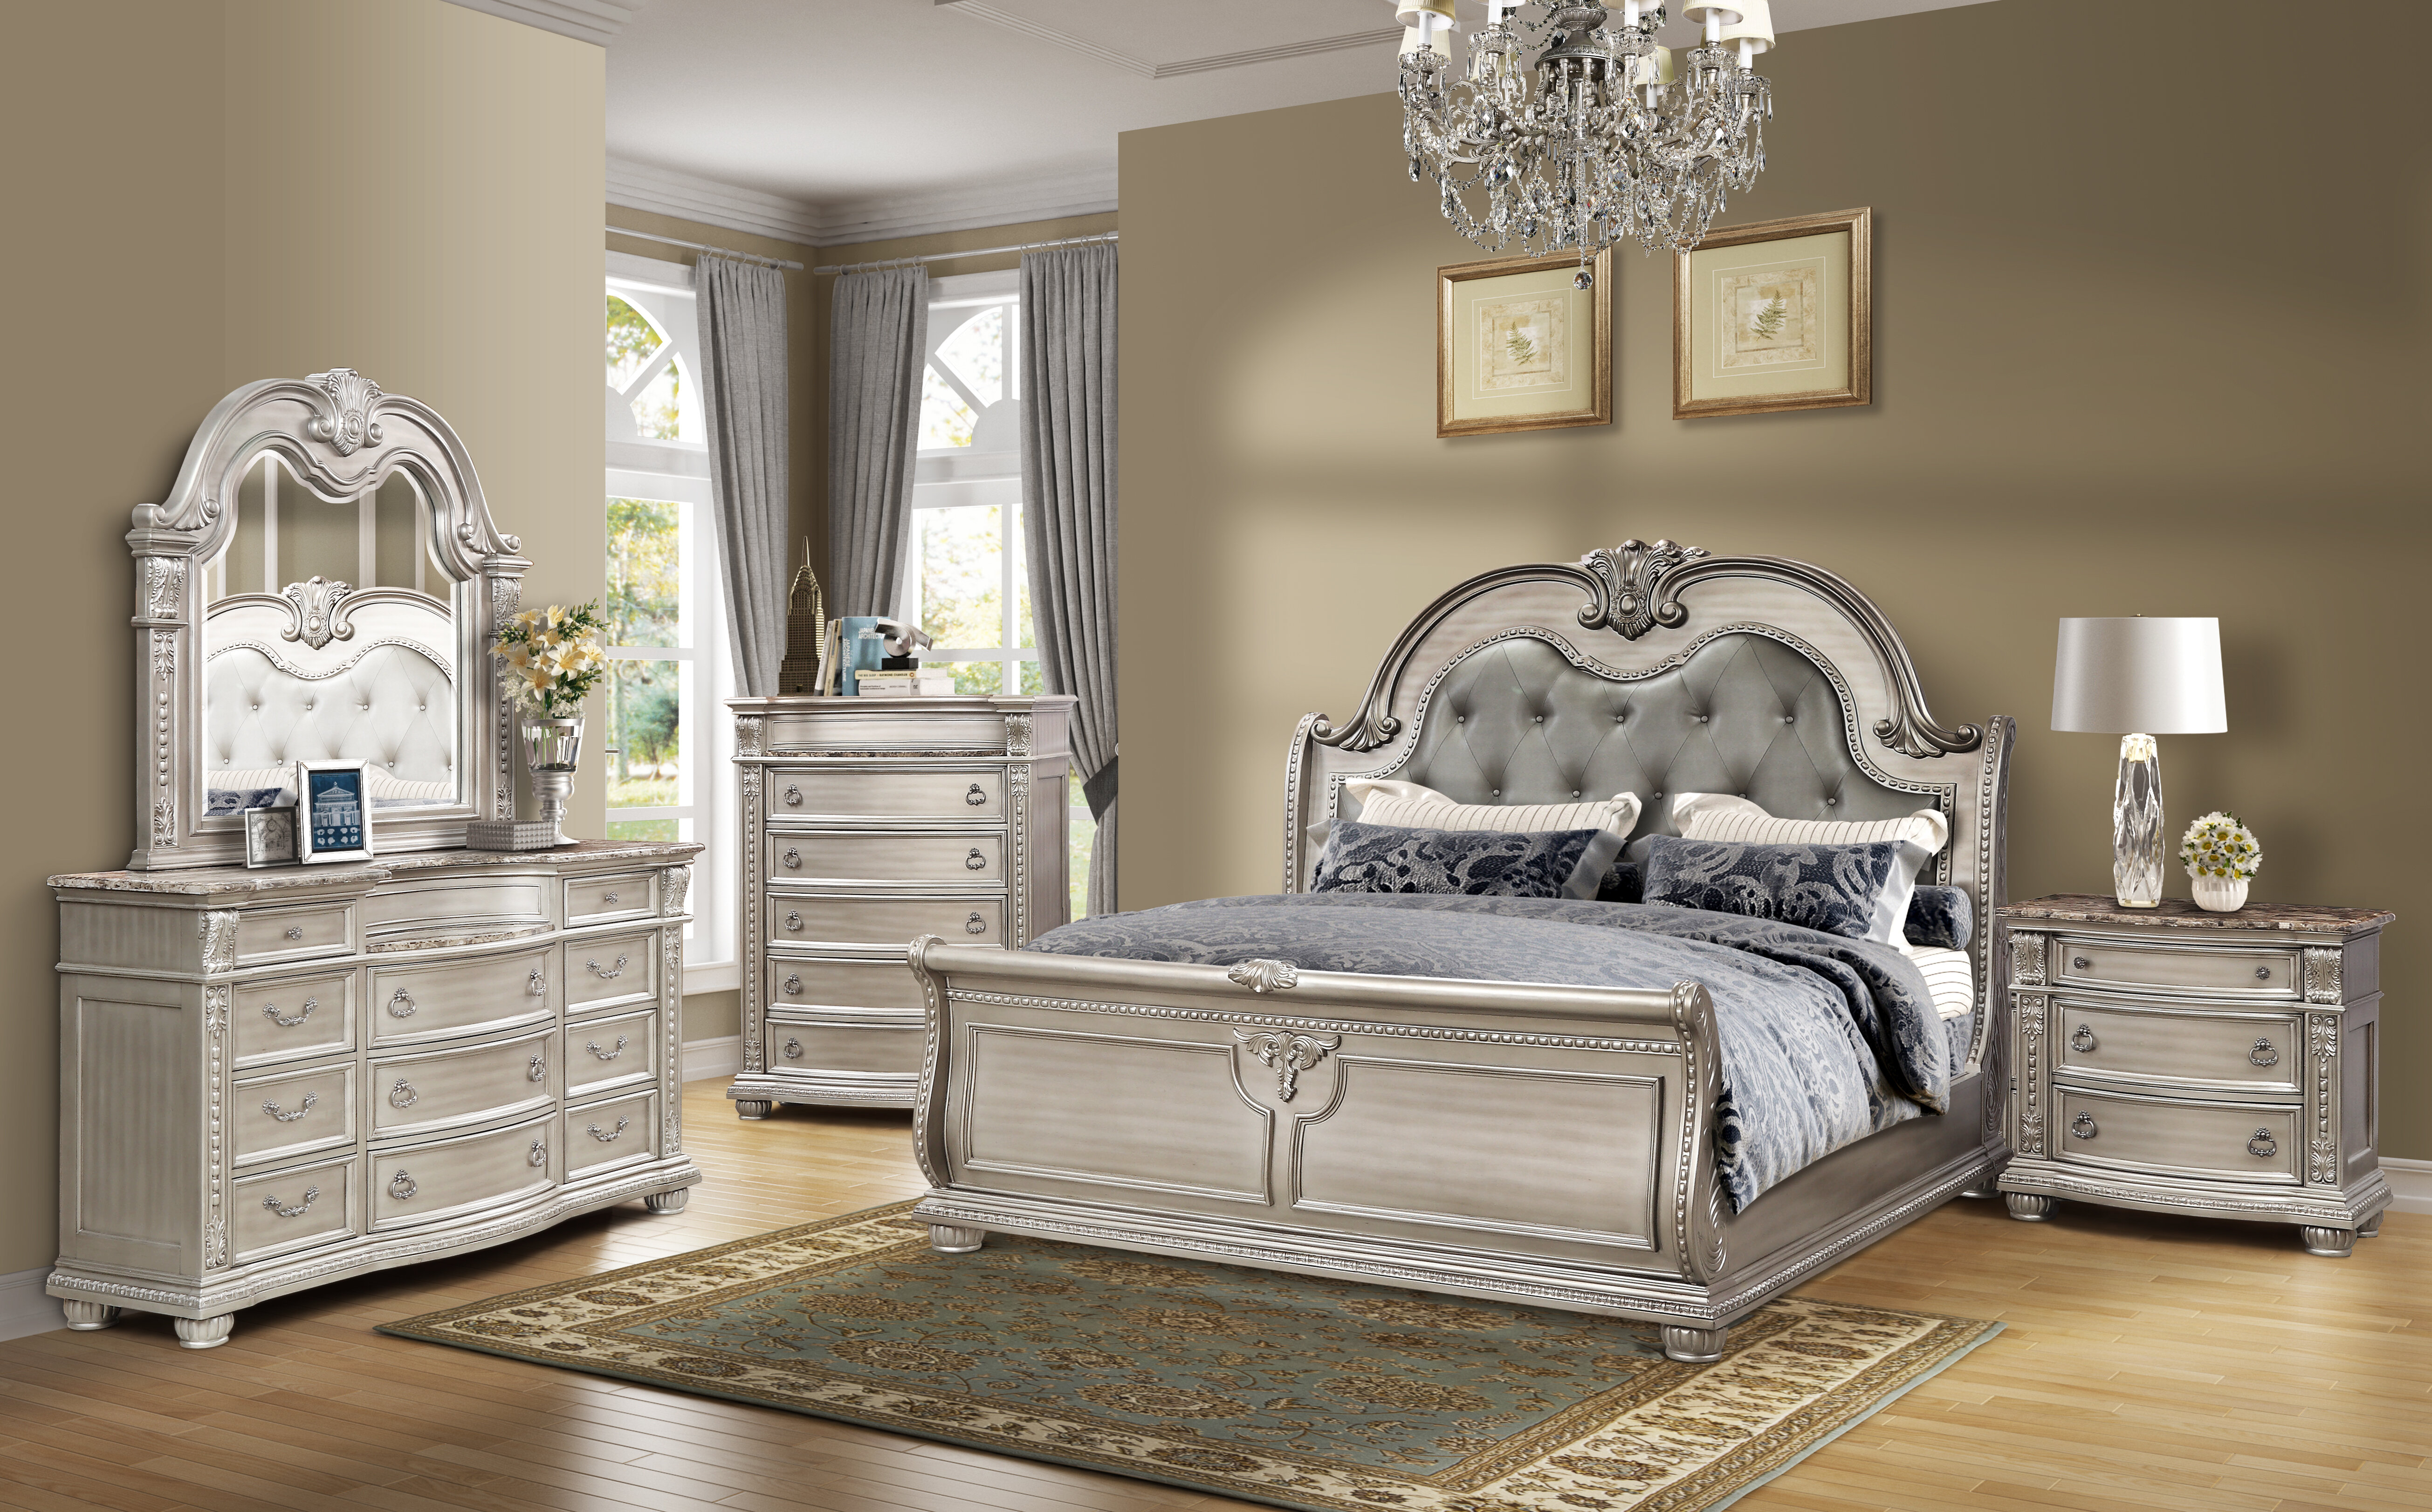 Wayfair Bedroom Sets Queen • Bulbs Ideas